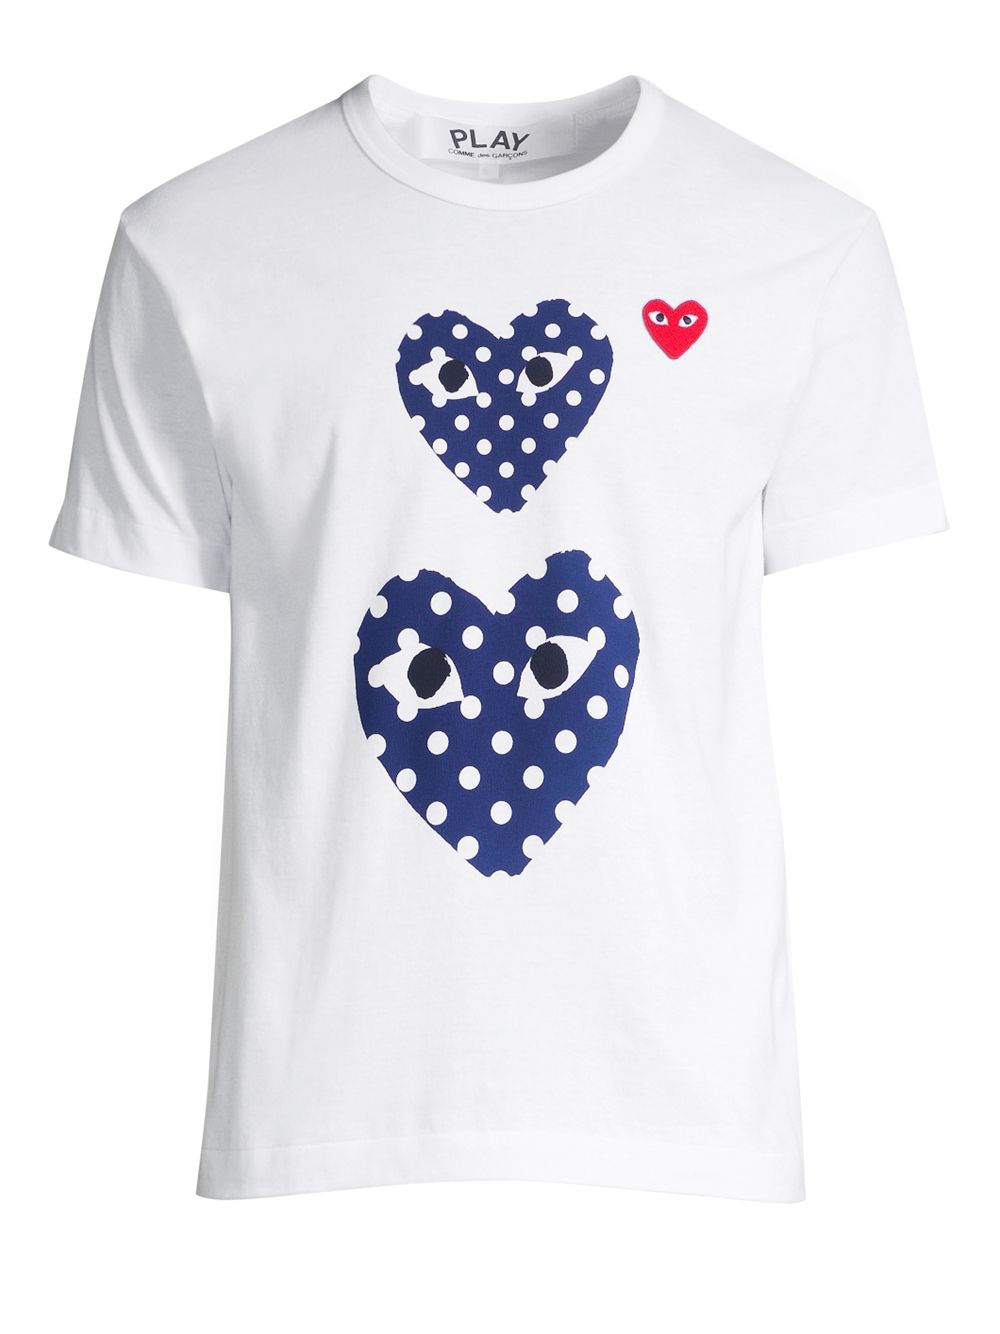 Футболка с двойным сердечком в горошек Comme des Garçons PLAY, белый футболка comme des garçons play с двойным сердечком цвет белый